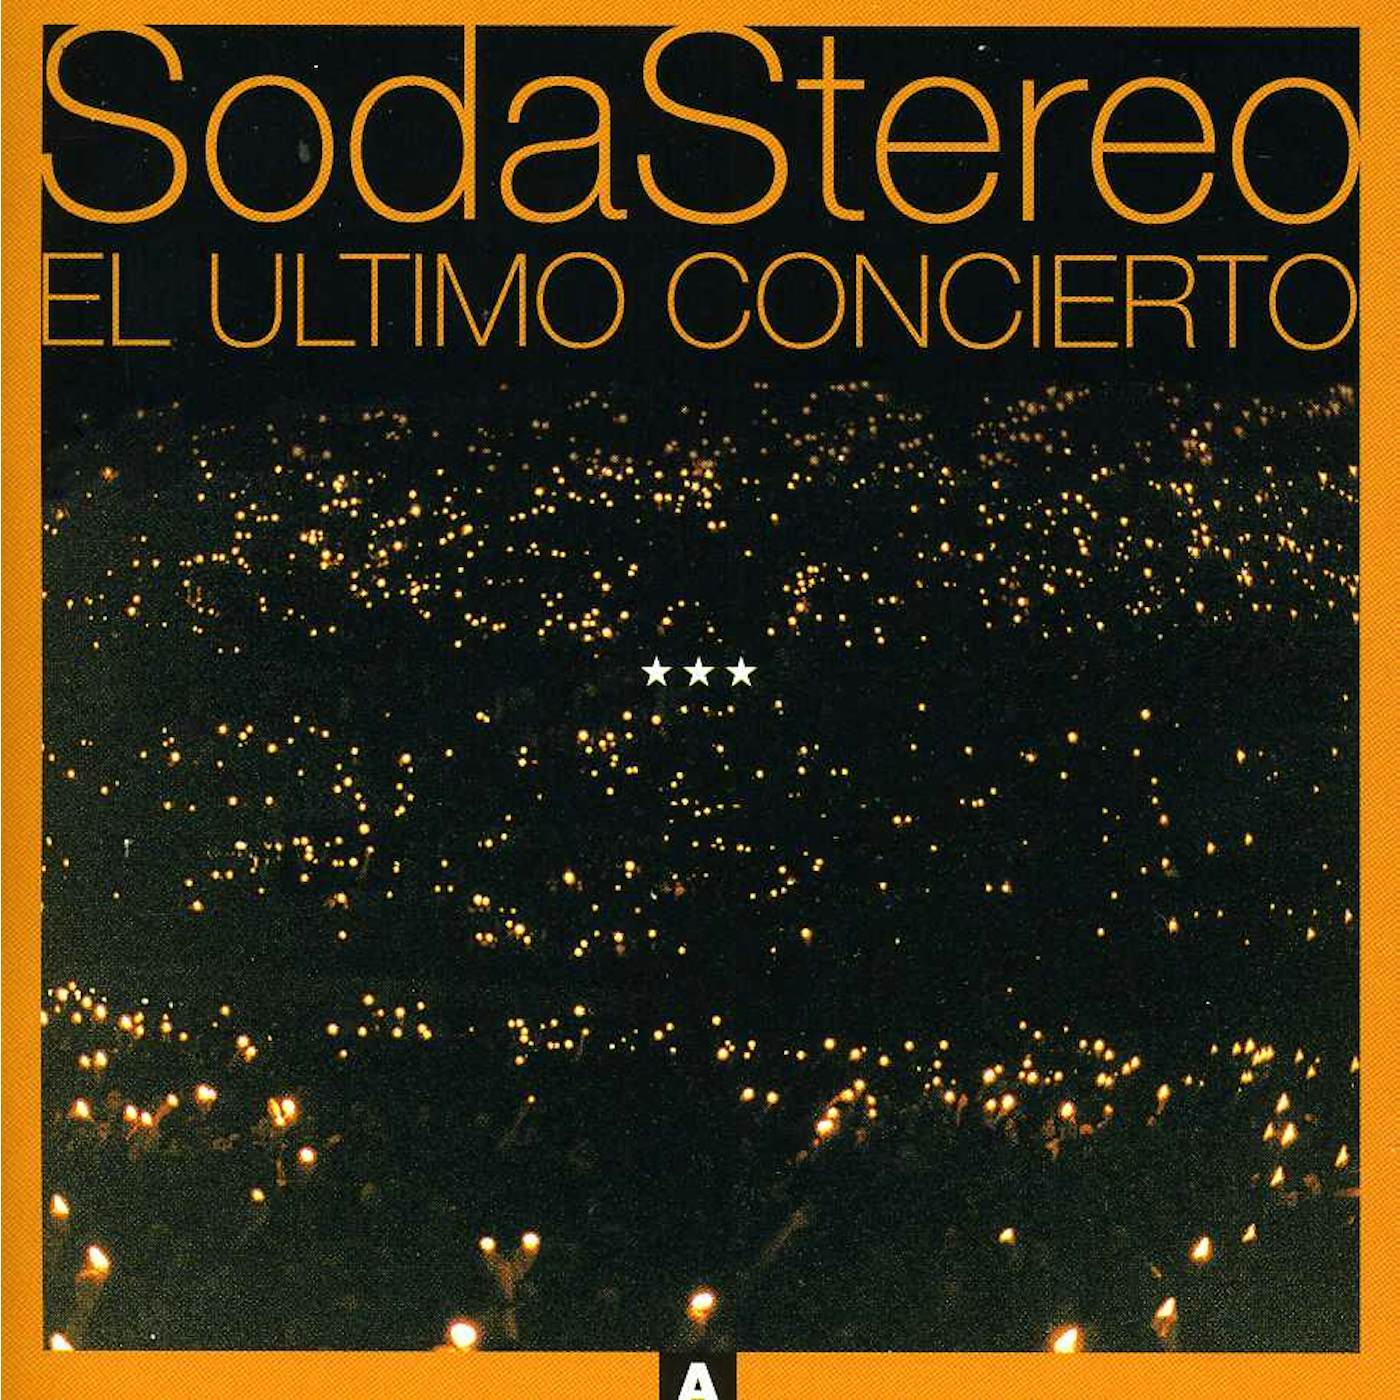 Soda Stereo ULTIMO CONCIERTO 1 CD